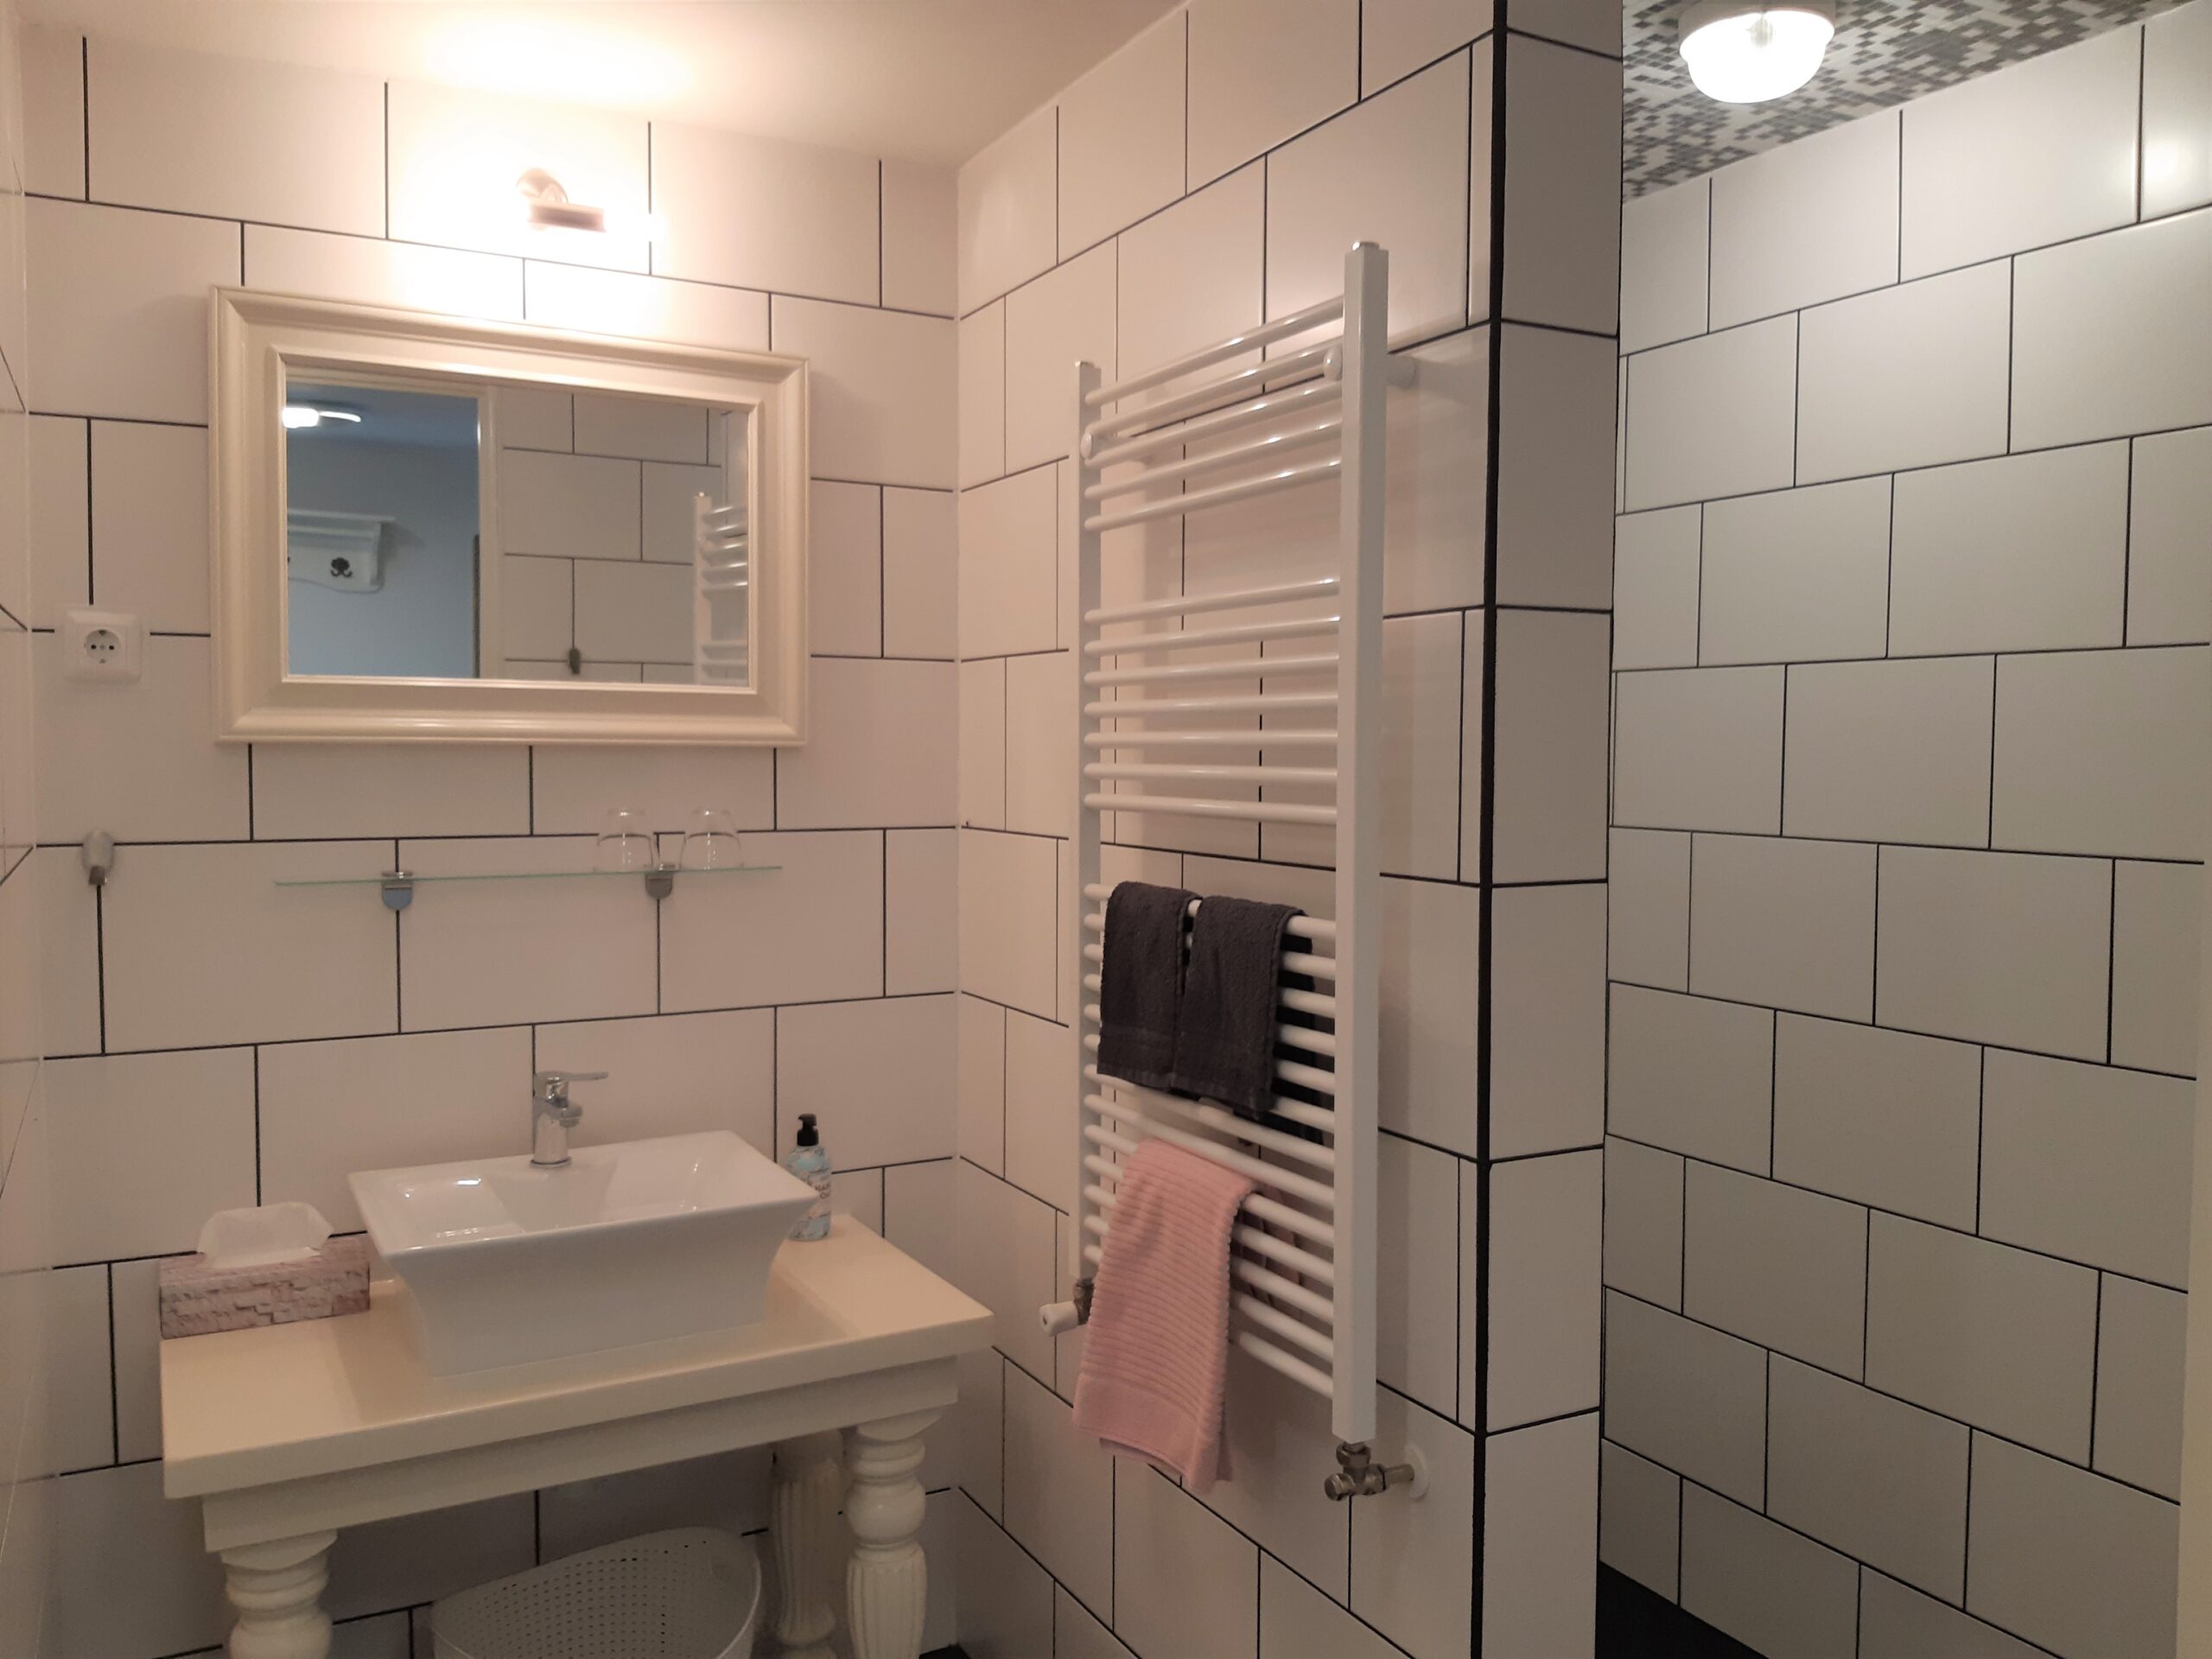 Kamer twee bevat een privé badkamer